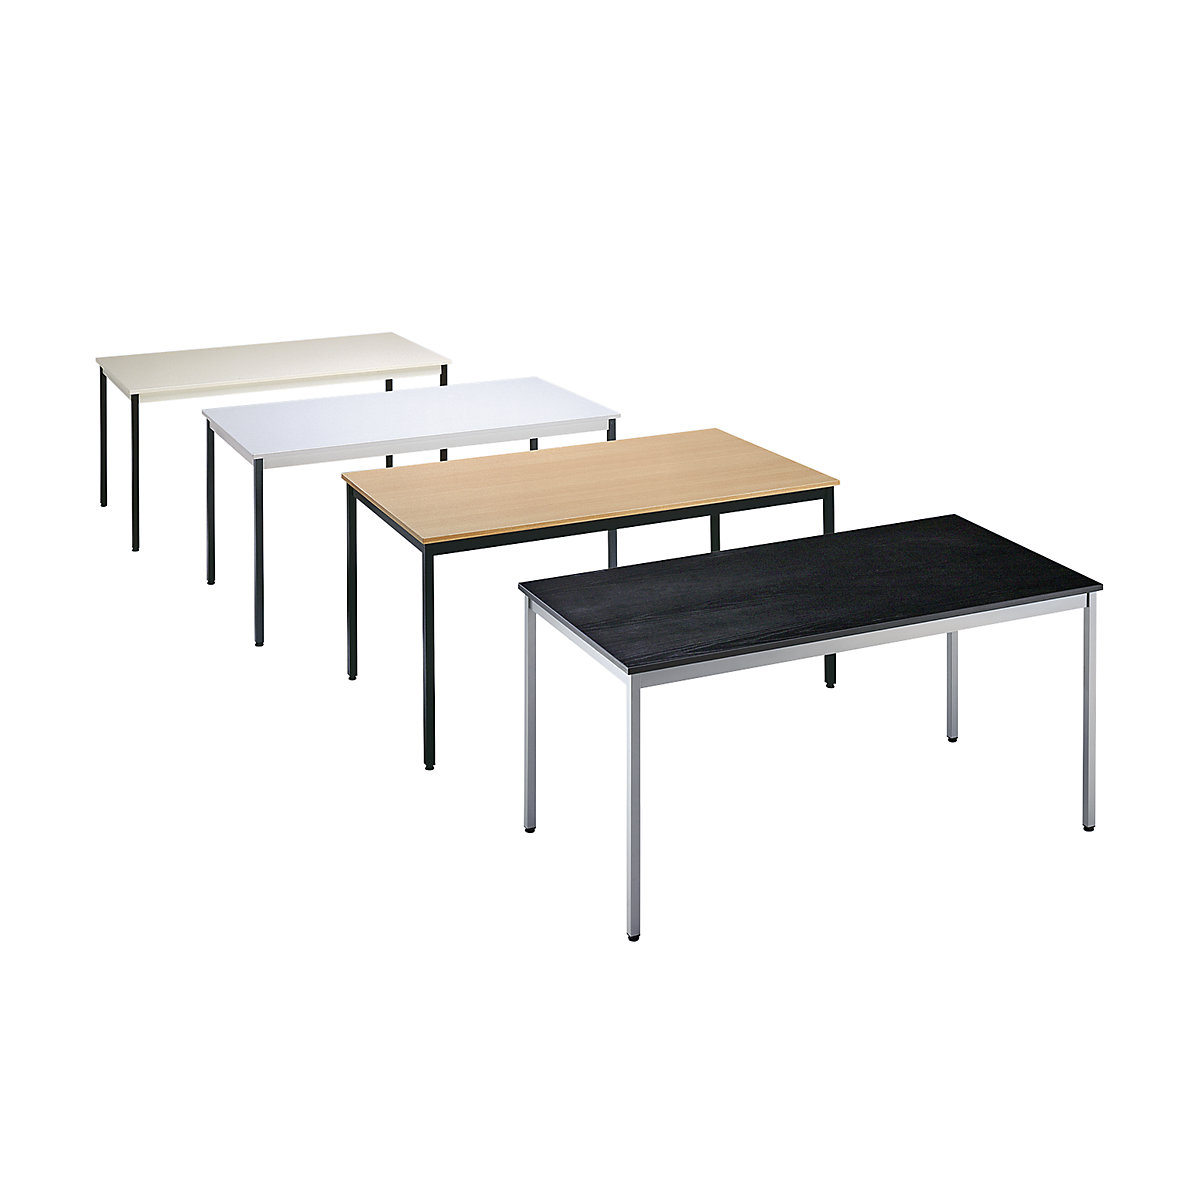 Večnamenska miza – eurokraft basic, pravokotna oblika, ŠxV 1200 x 740 mm, globina 600 mm, plošča v imitaciji javorja, ogrodje aluminijasto belo-1